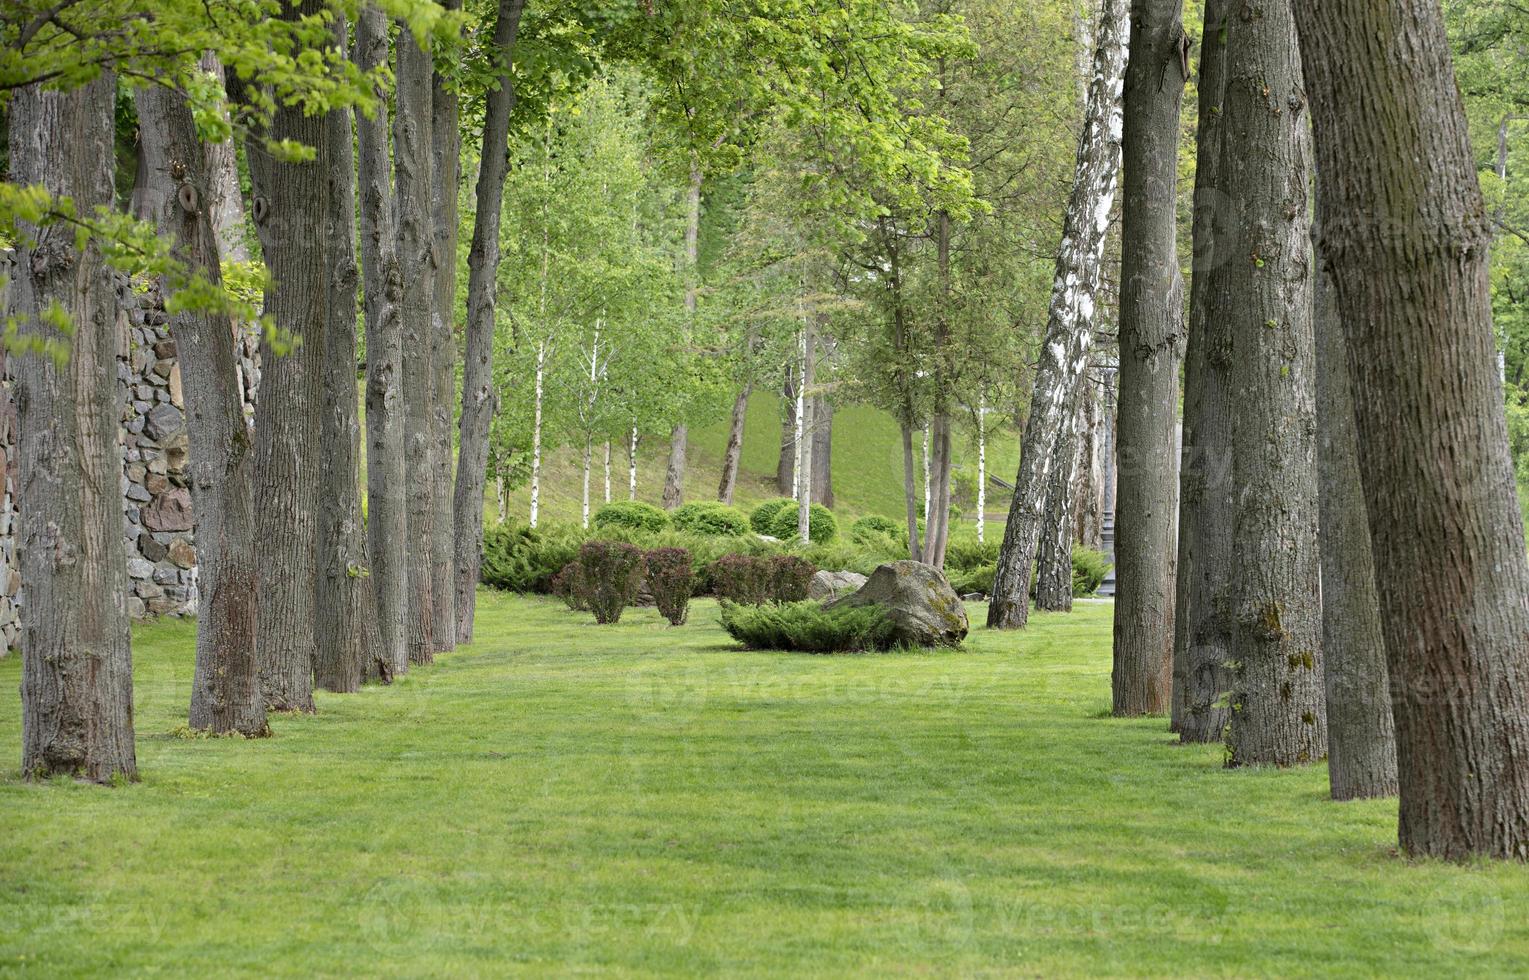 Eichenallee im Park mit schöner grüner Rasenfläche - ausgezeichneter Naturpavillon foto